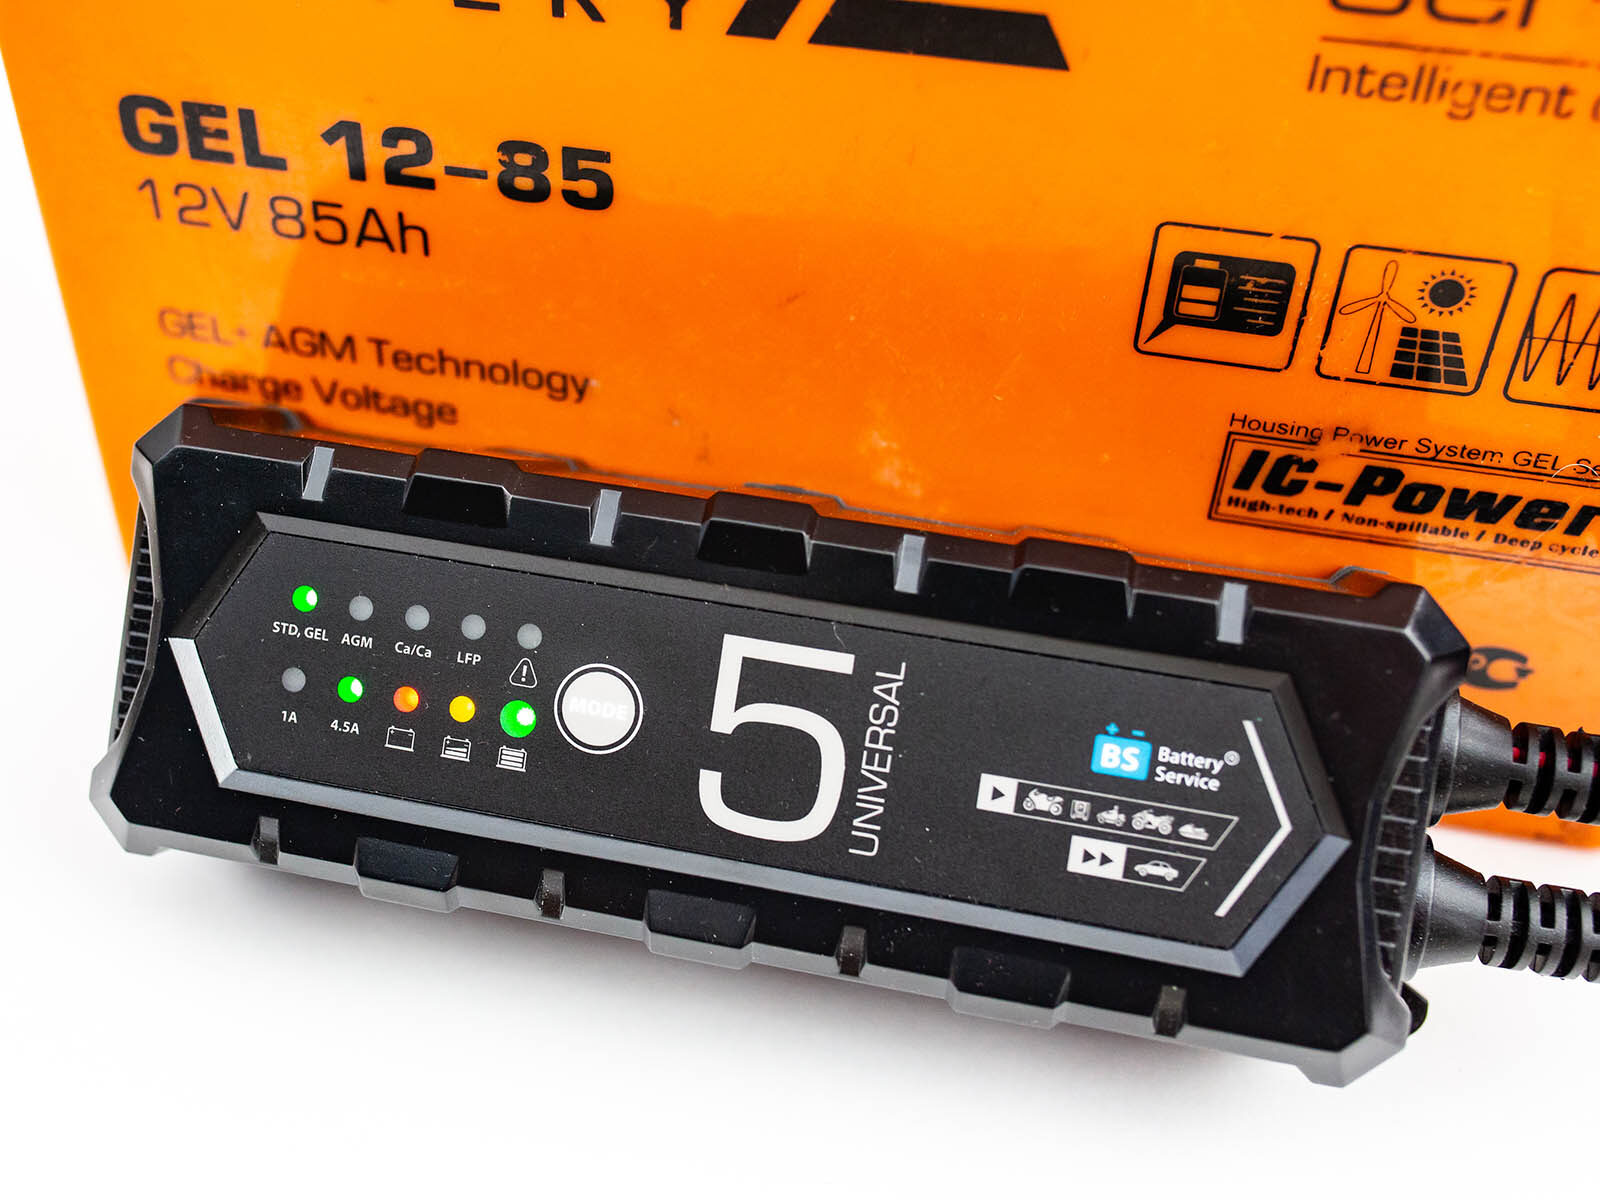 batteryservice universal delta gel аккумулятор